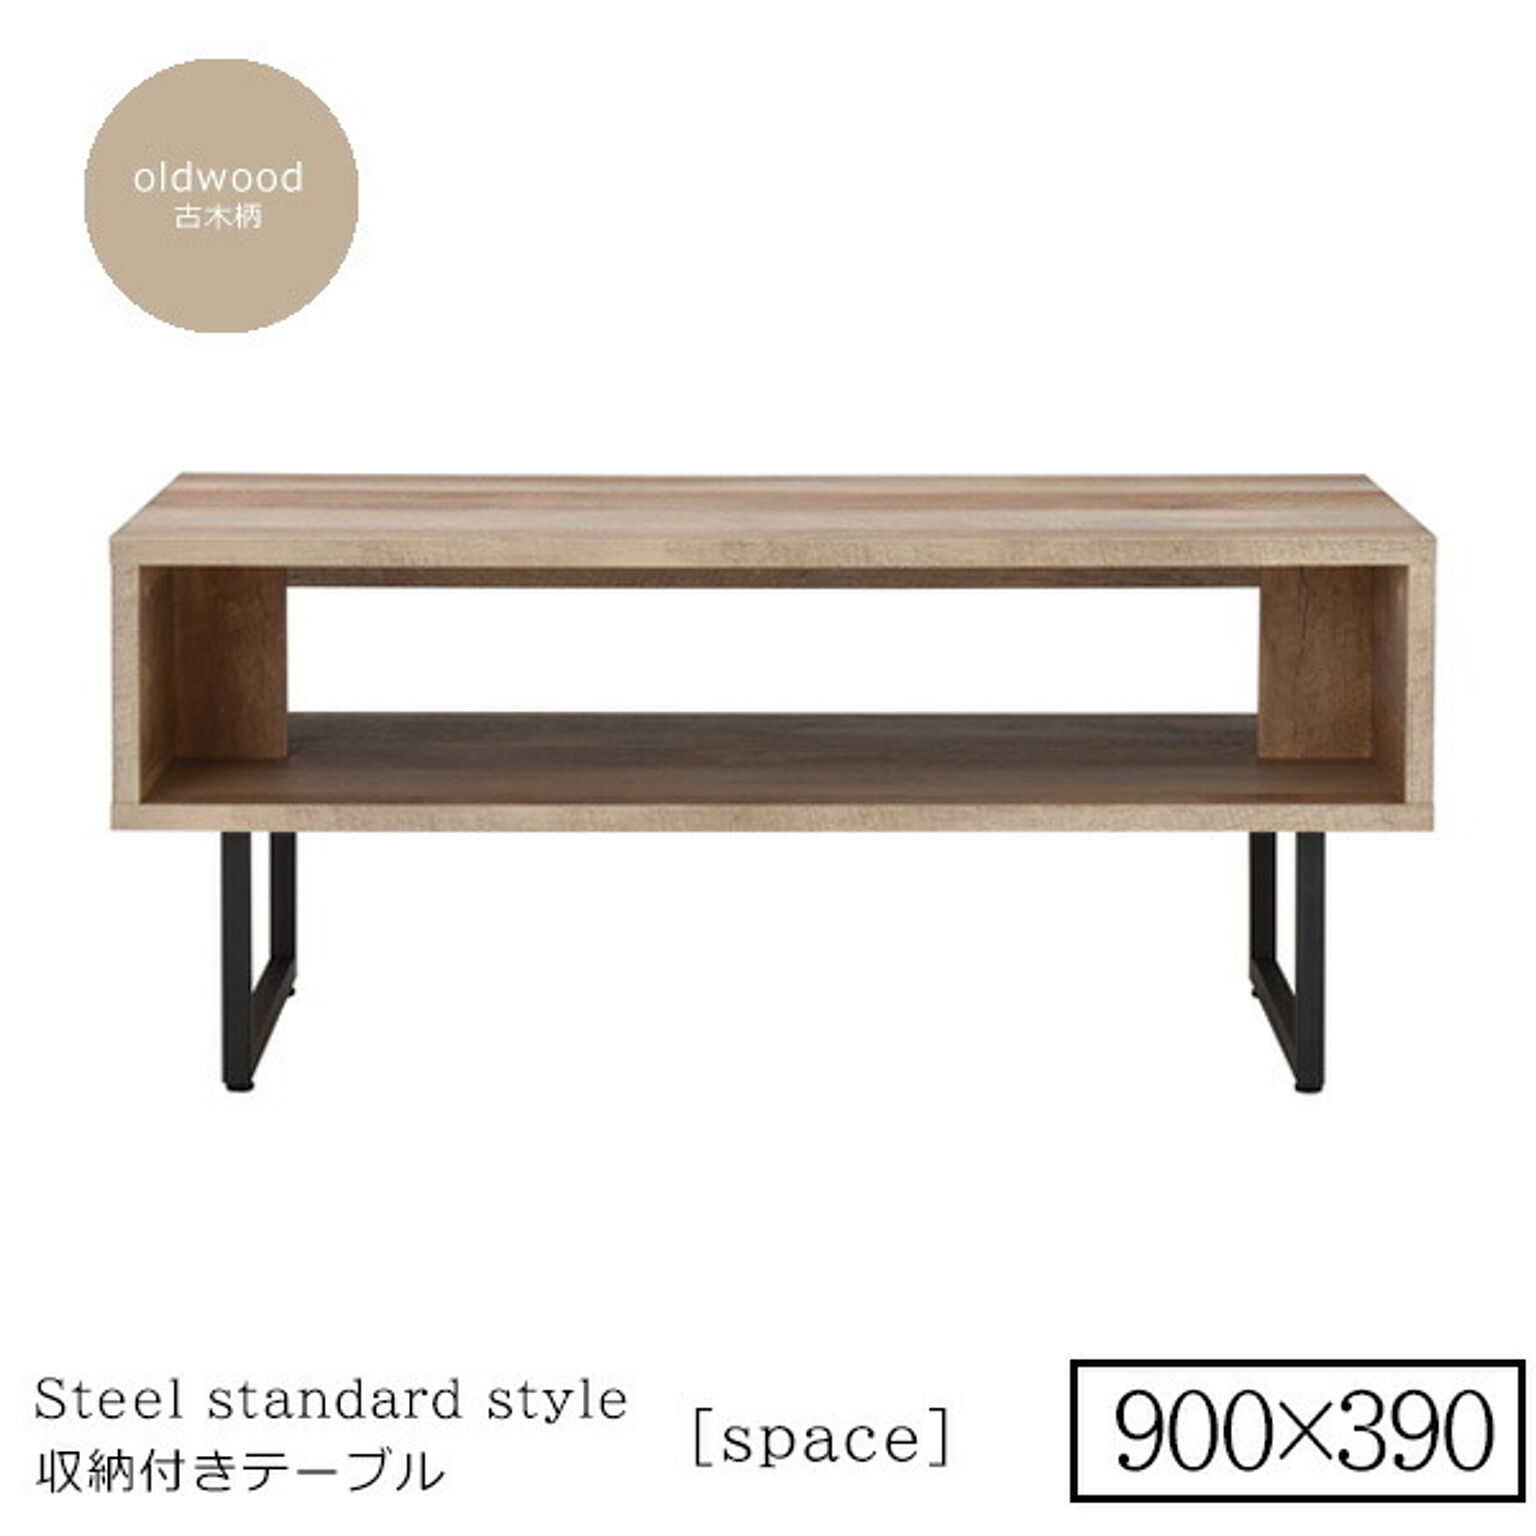 900x390 ： シンプル収納リビングテーブル 【space】古木柄  (アーバン) センターテーブル コーヒーテーブル リビング 